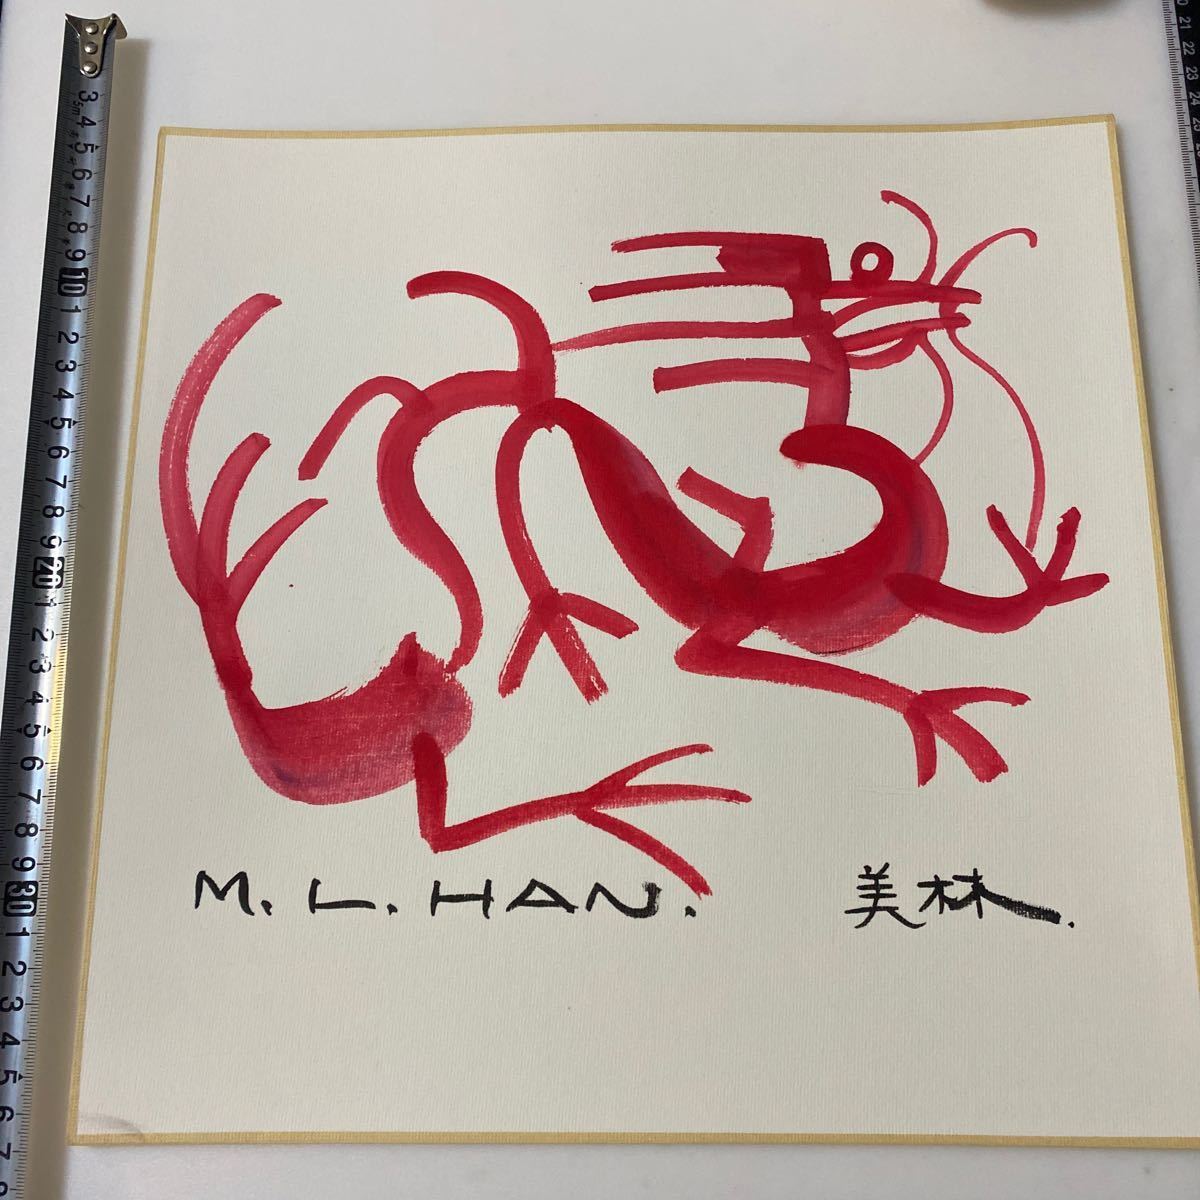 Maestro chino de caligrafía y pintura Han Meilin, diseñador de los signos del zodíaco de los Juegos Olímpicos de Beijing Fuyan 2024 Jiaojin/Dragón《Signo del Dragón/Han Meilin》 33x33cm Garantía de escritura auténtica Número de gestión: 468, obra de arte, cuadro, Pintura en tinta